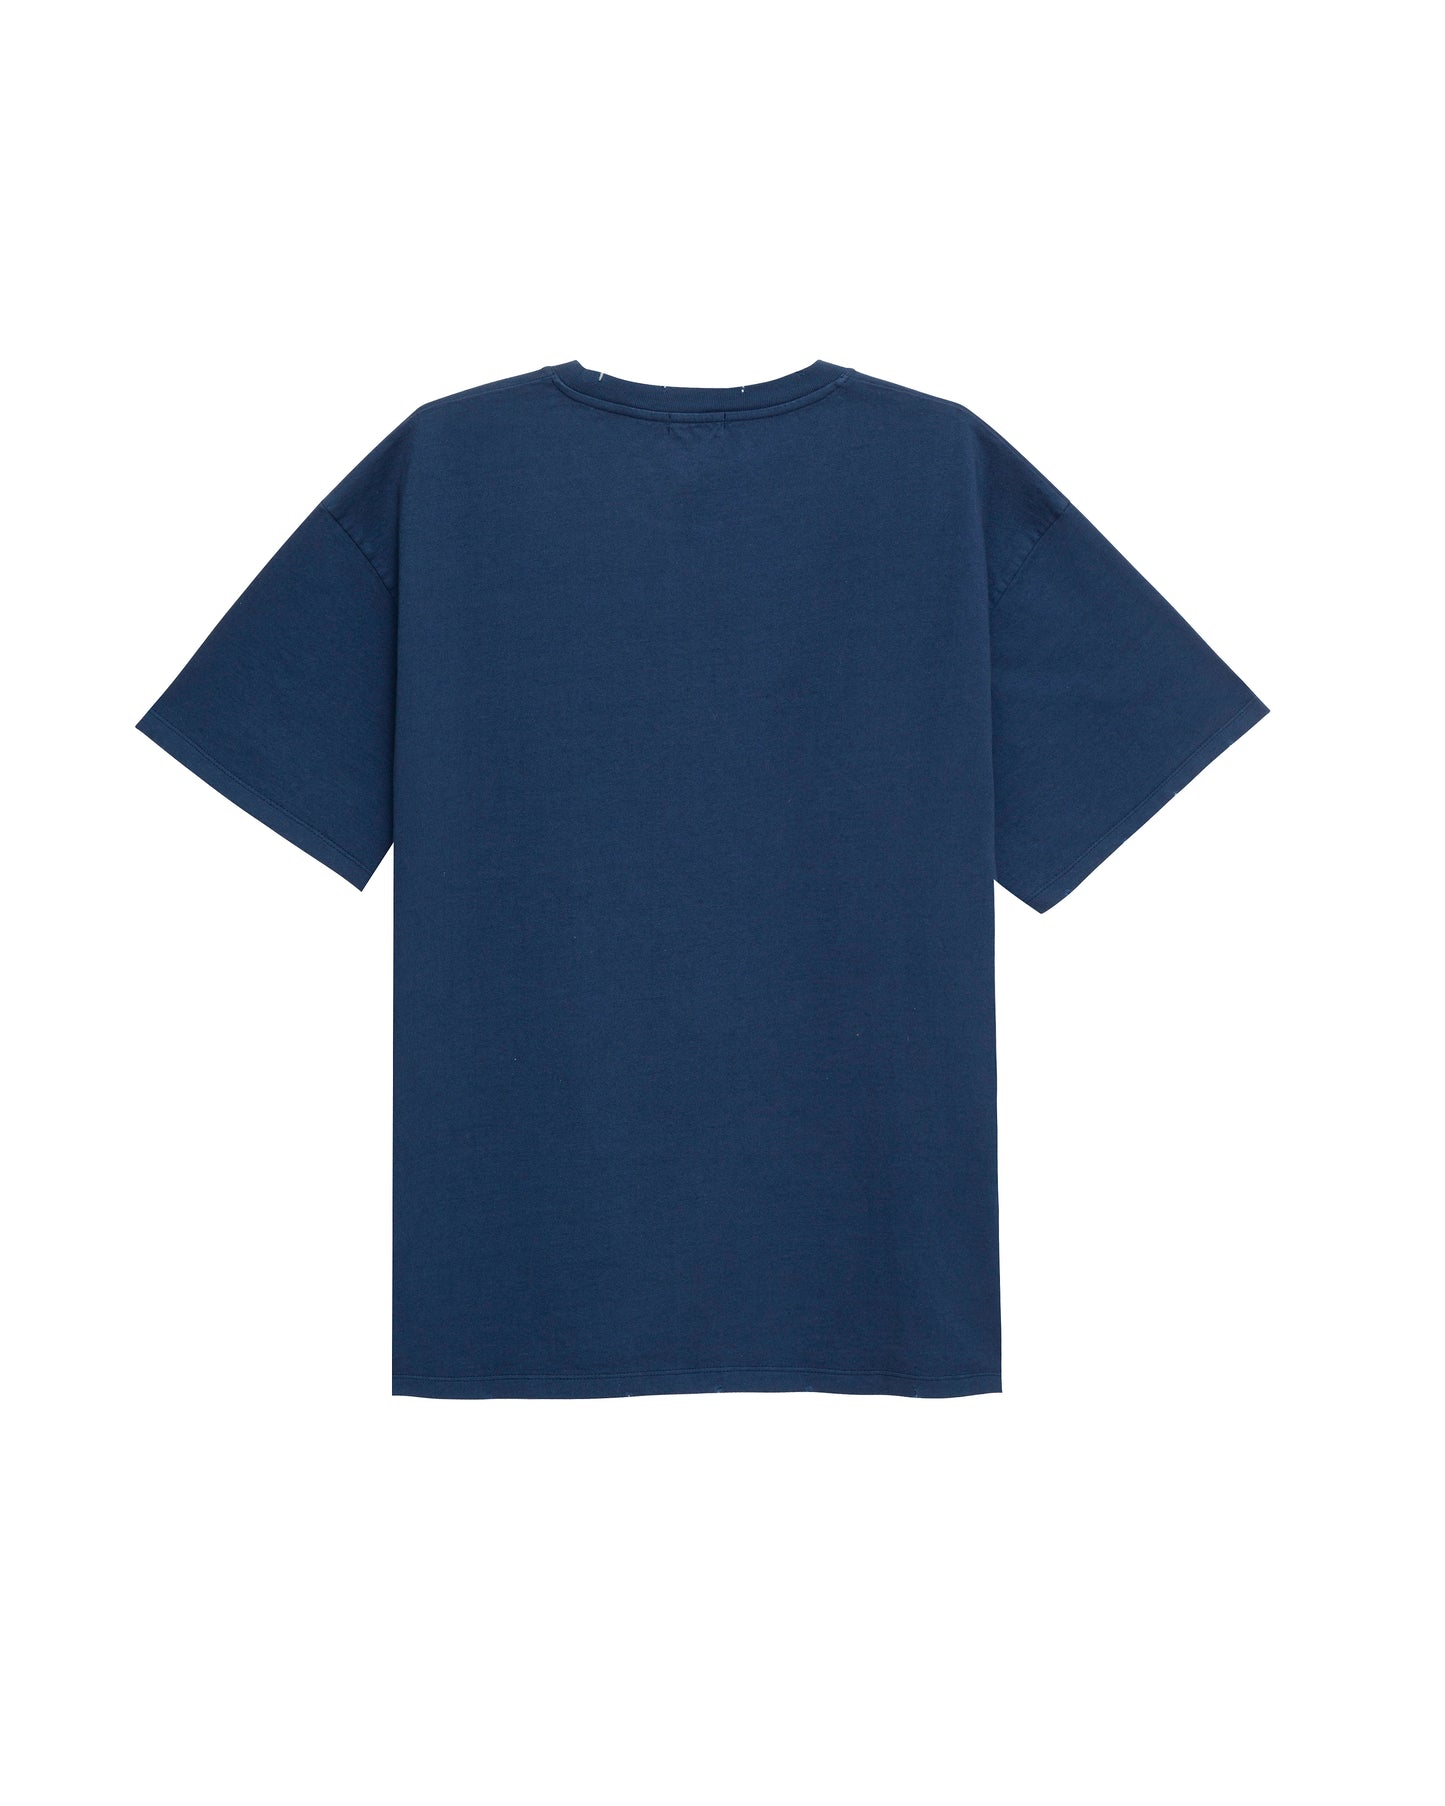 T-shirt bleu marine Countach